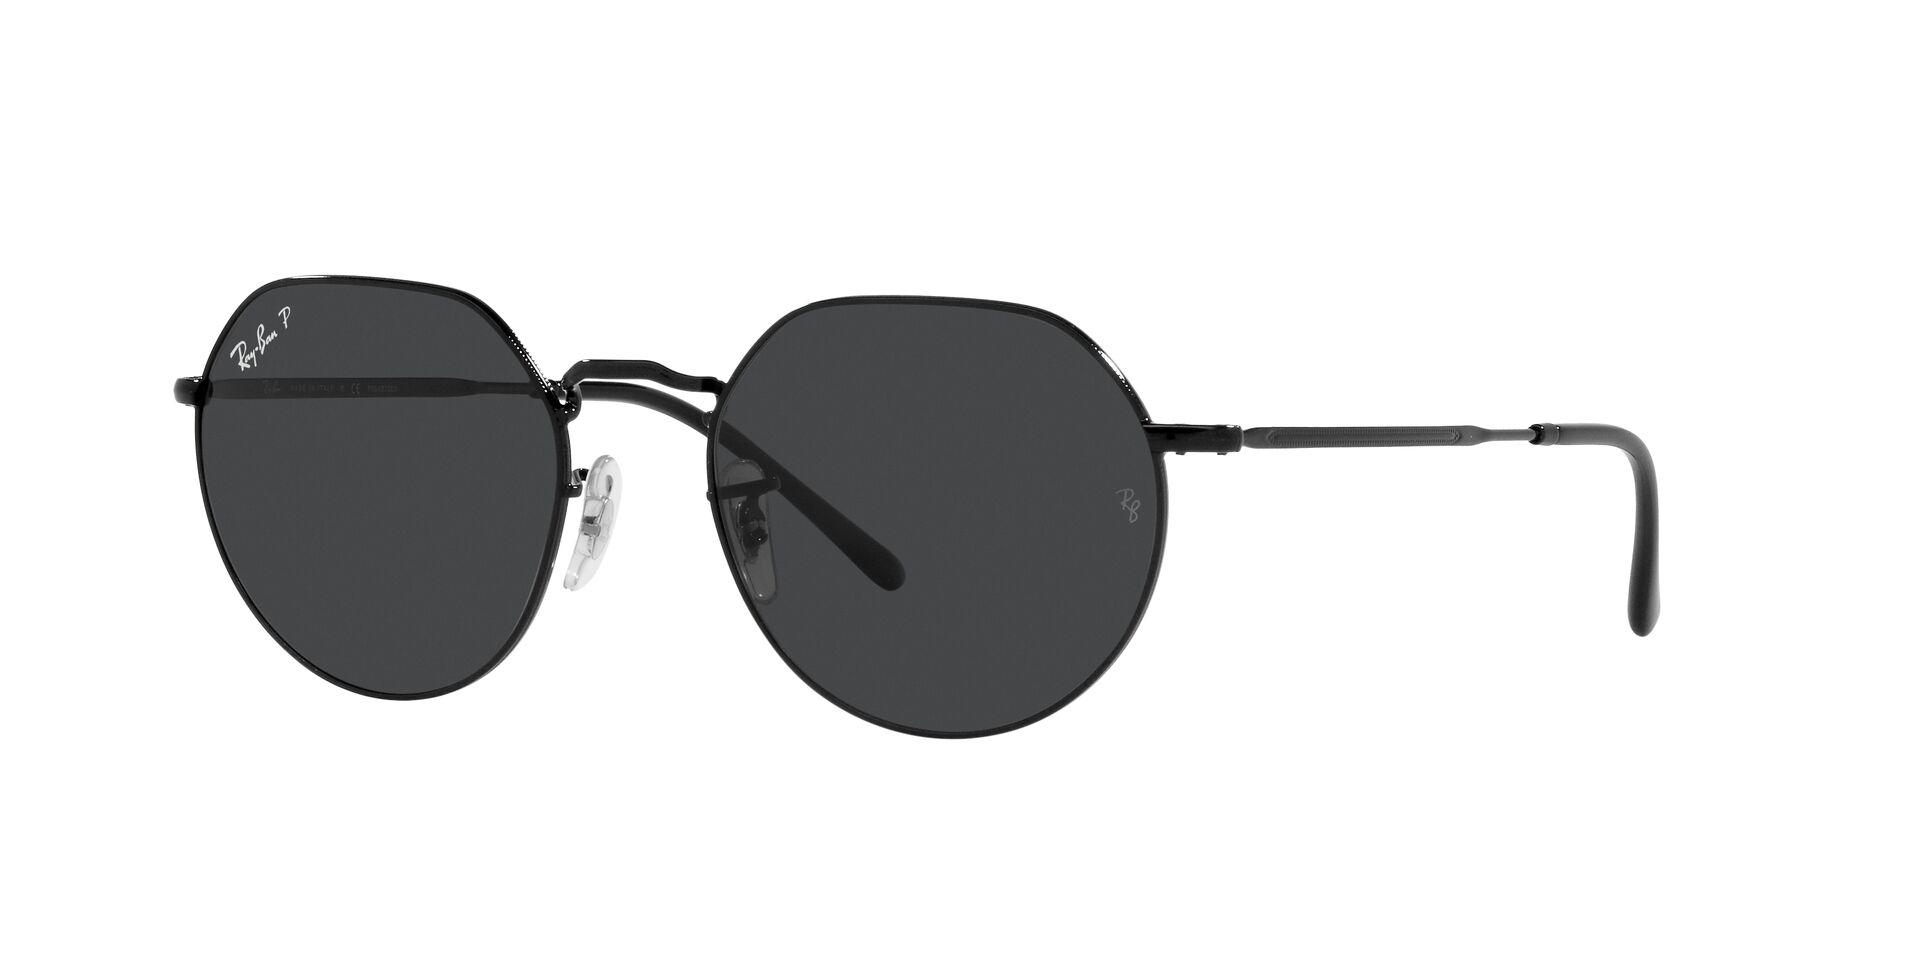 Mắt Kính RAY-BAN  - RB3565 002/48 -Sunglasses